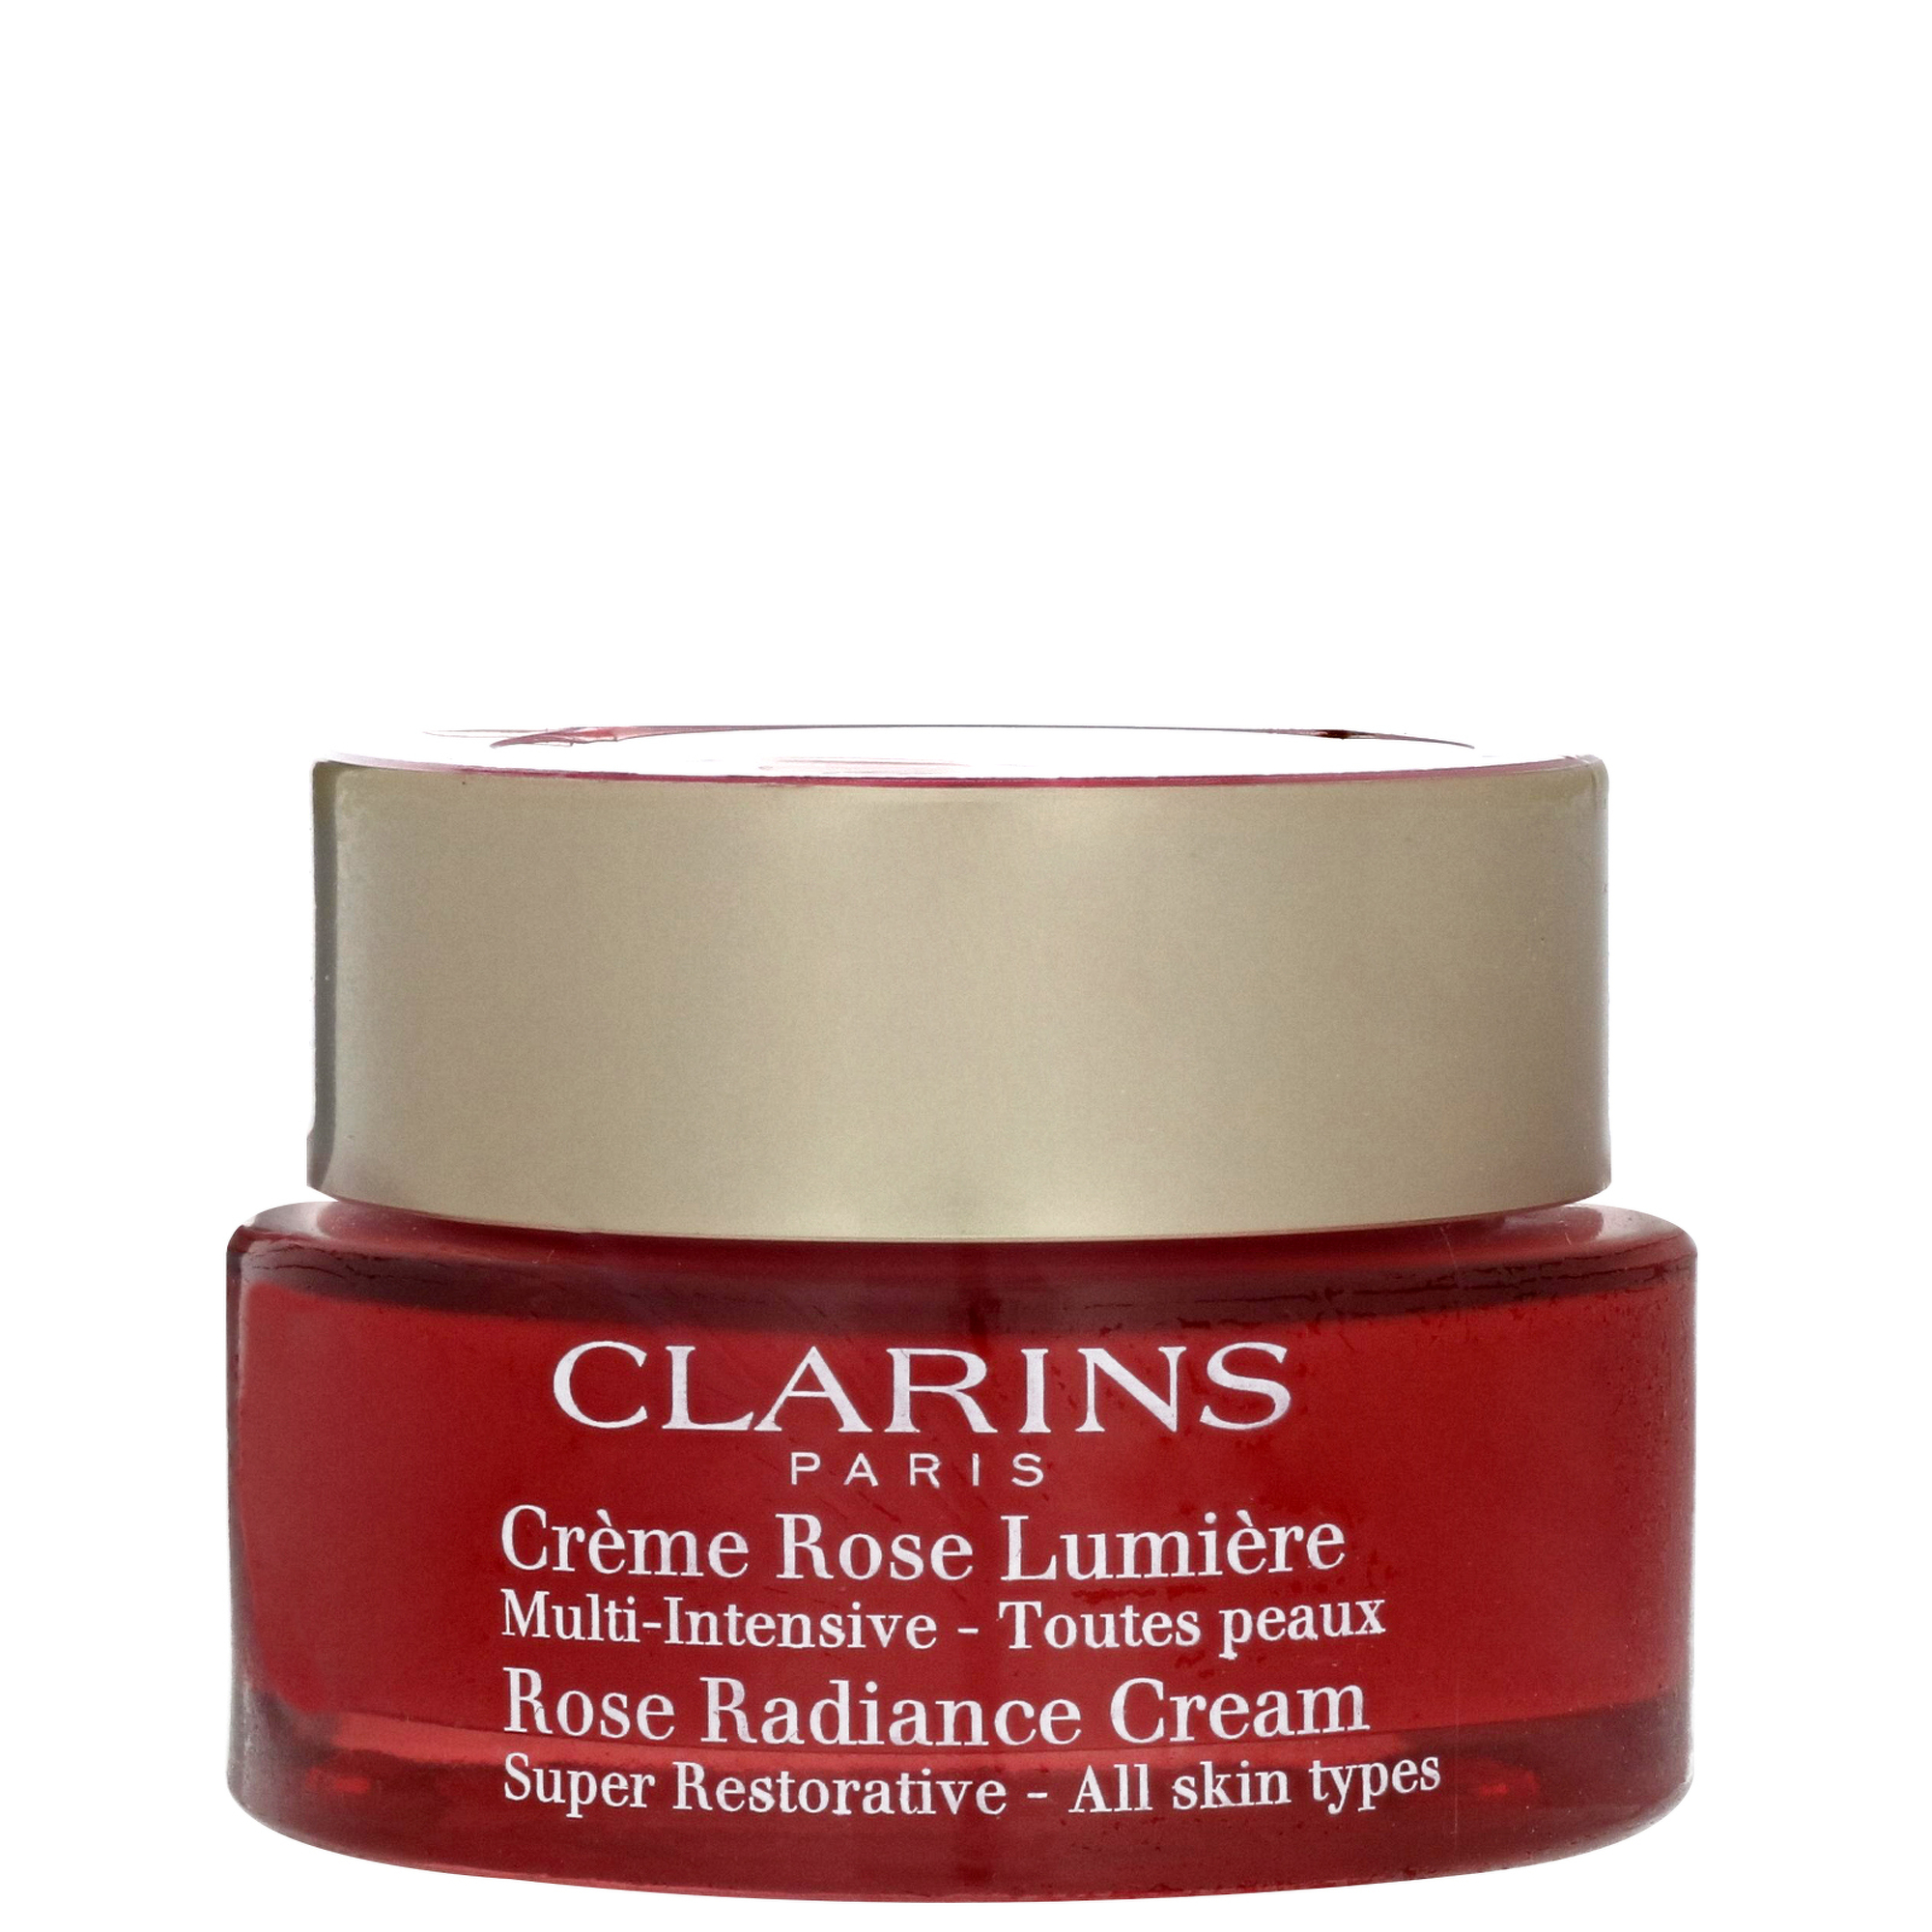 Image of Clarins Super Restorative Rose Radiance Cream 50ml